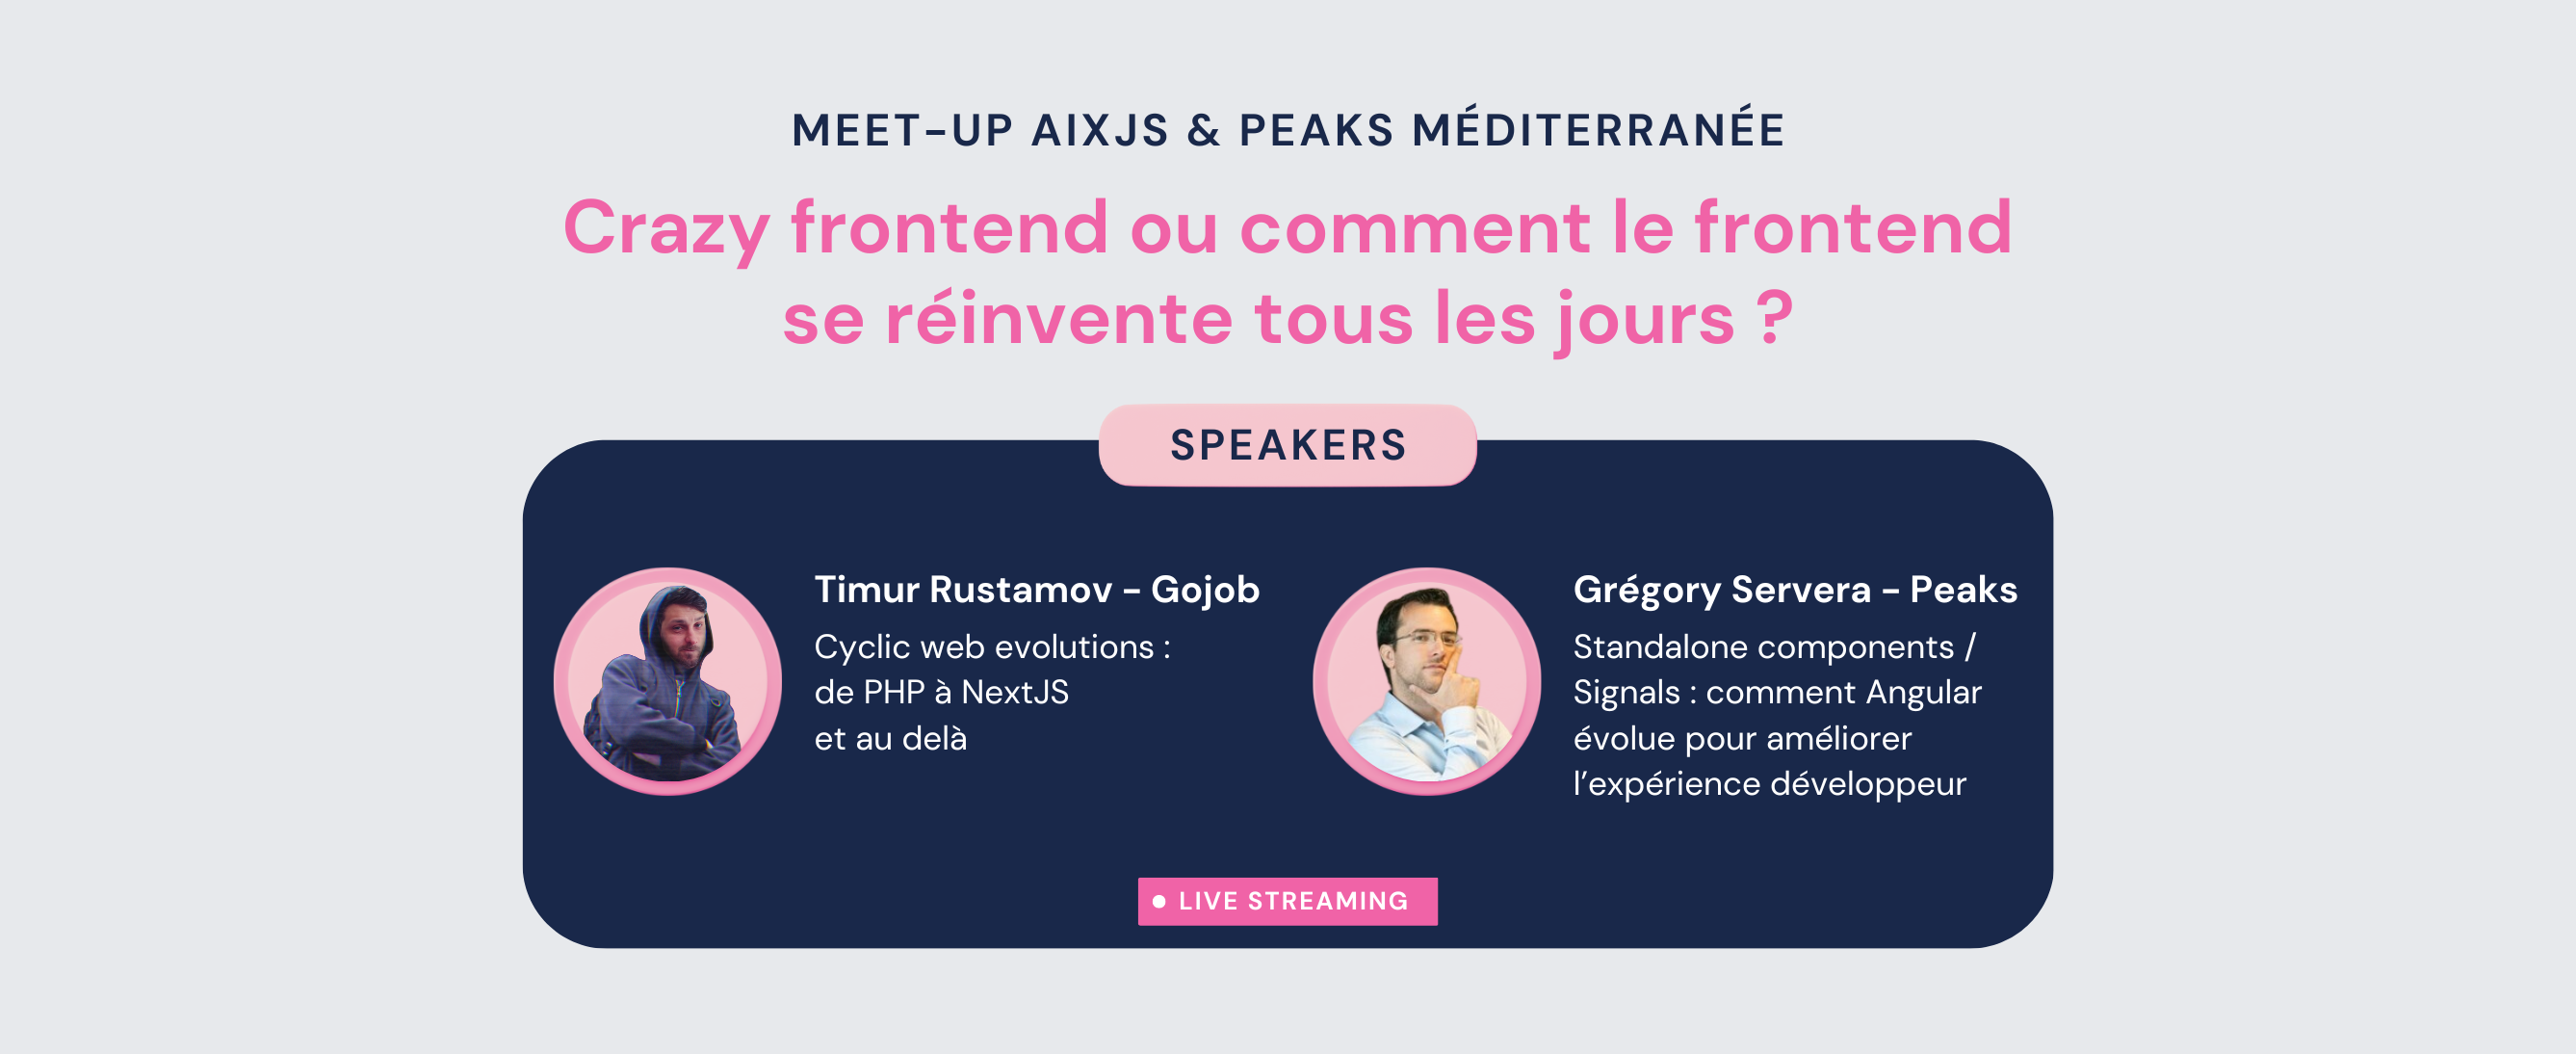 Meet-up IT Peaks sur le frontend : Comment le frontend se réinvente tous les jours ? Crazy frontend Peaks Méditerranée